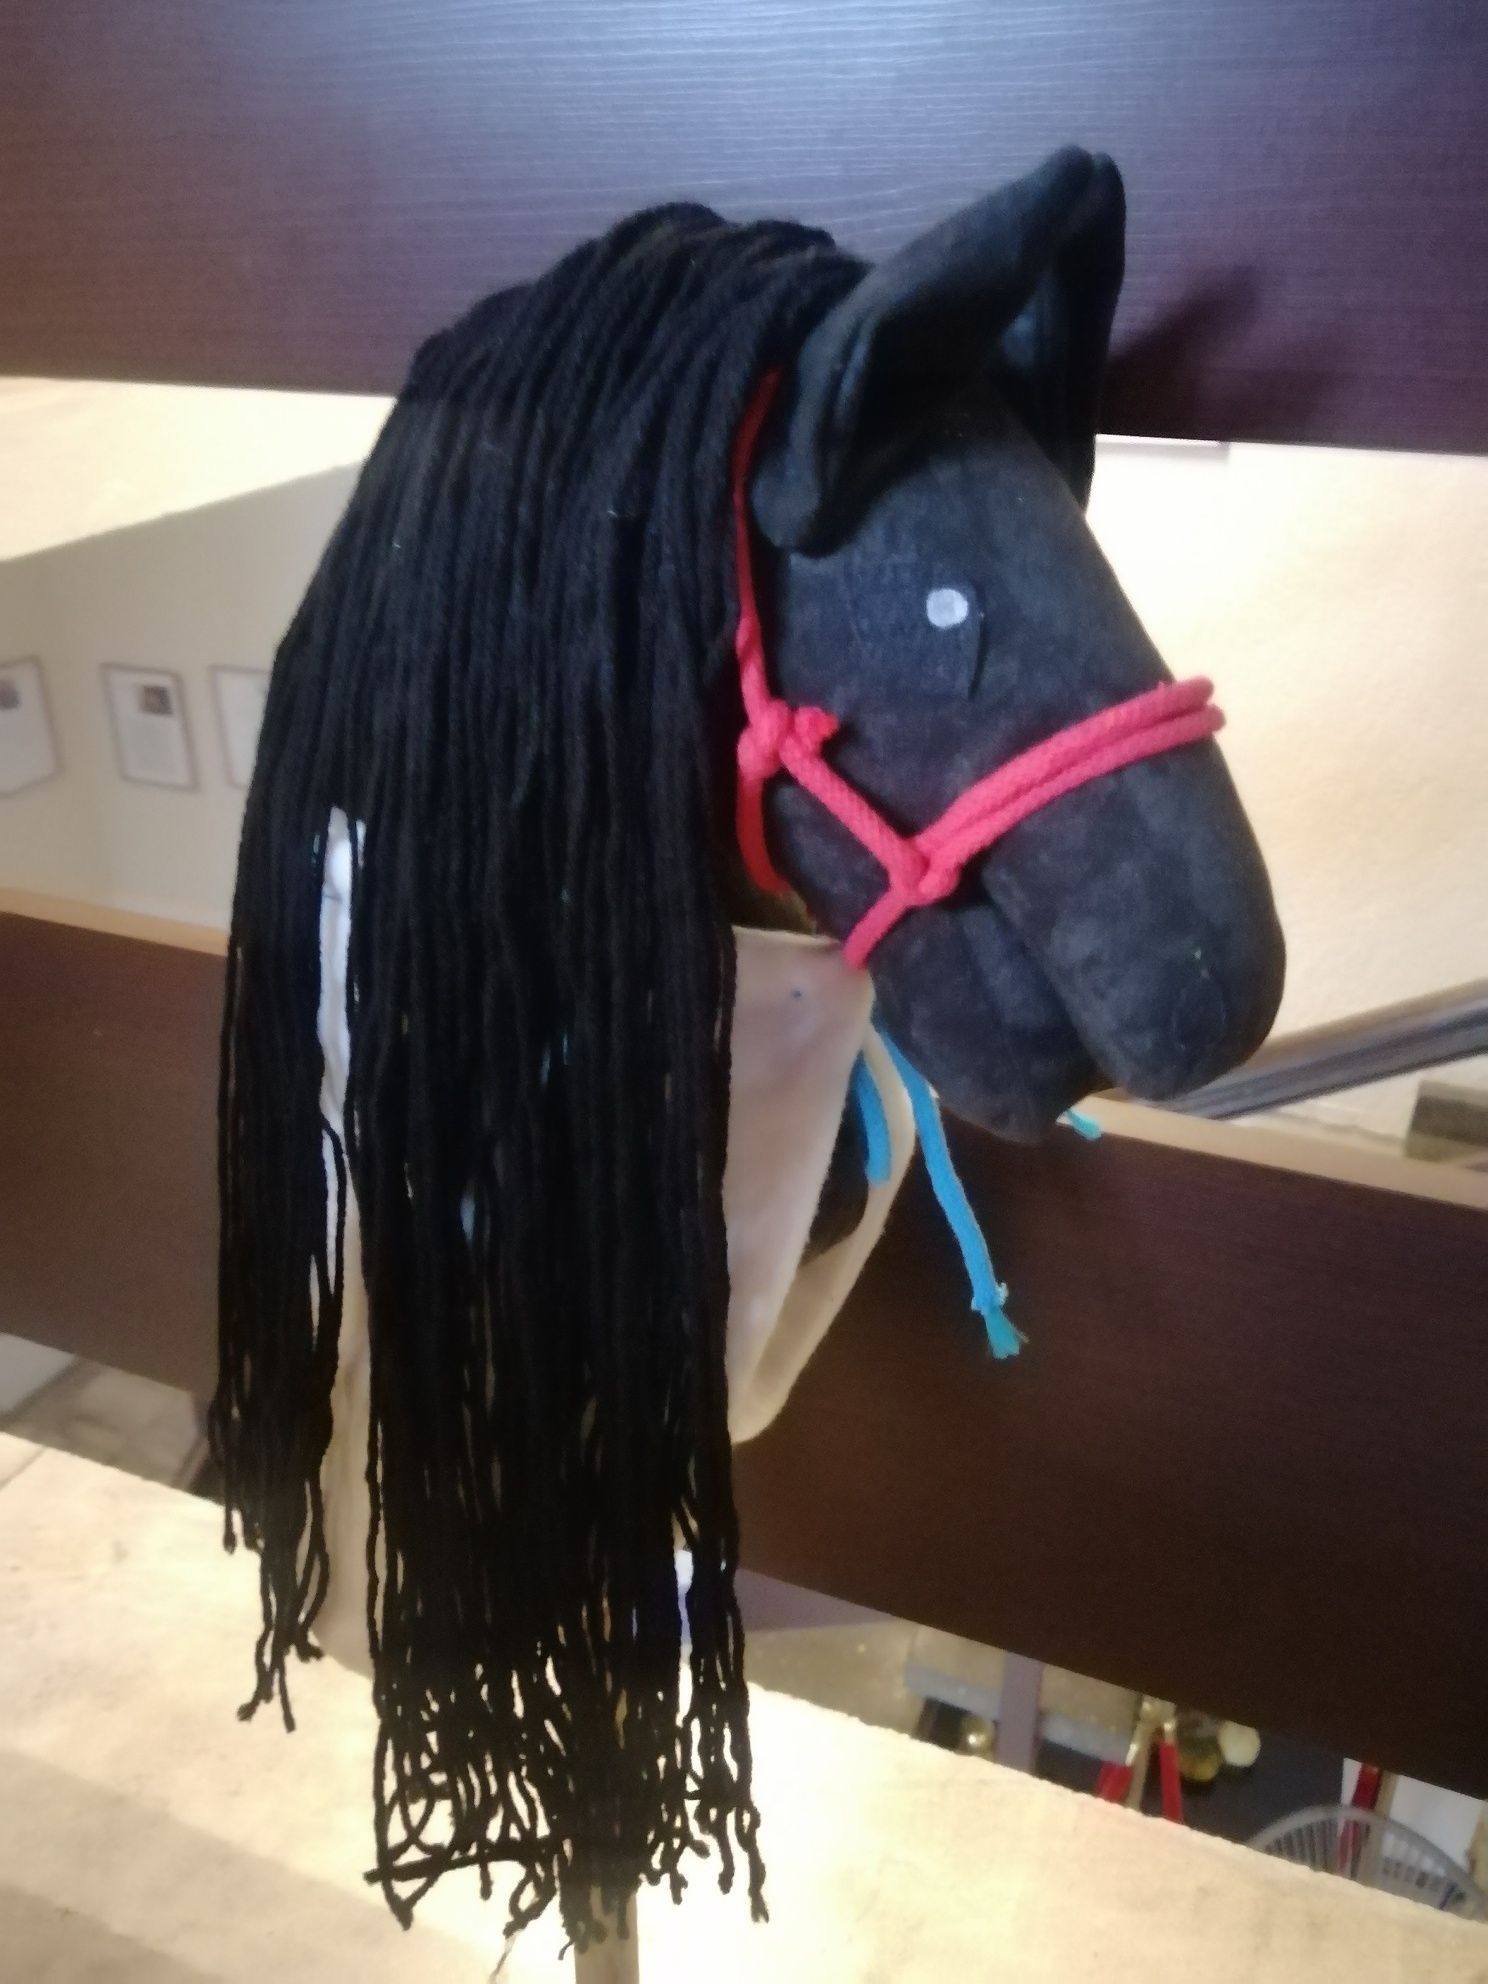 Hobby horse, kolor czarny.